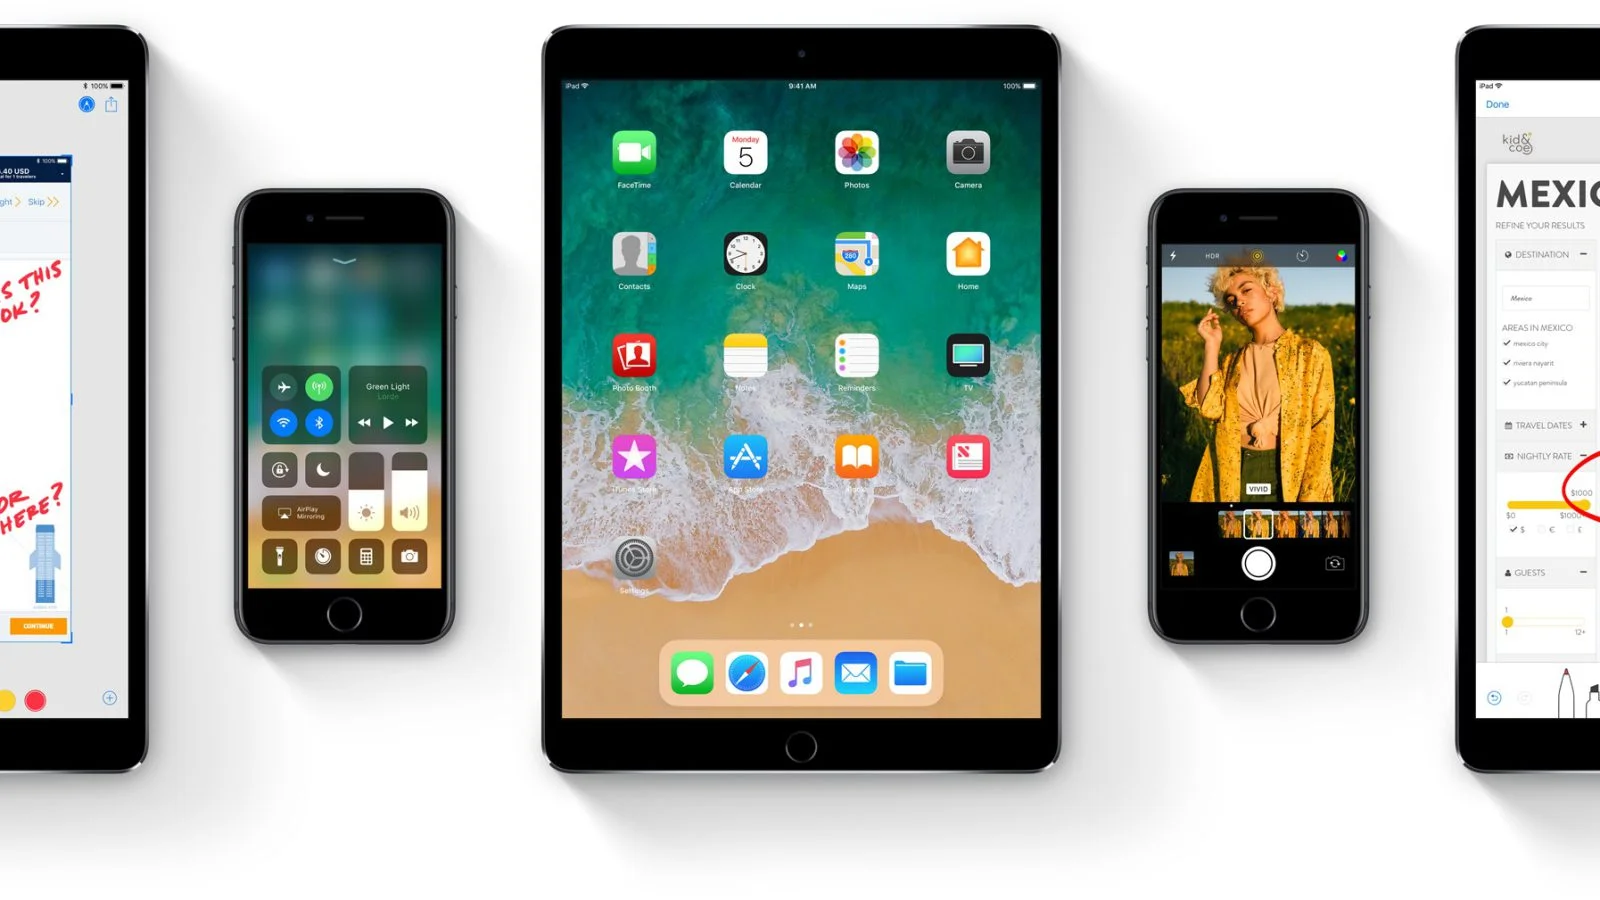 Как скачать и установить бету iOS 11 уже сейчас на iPhone, iPad и iPod - фото 2